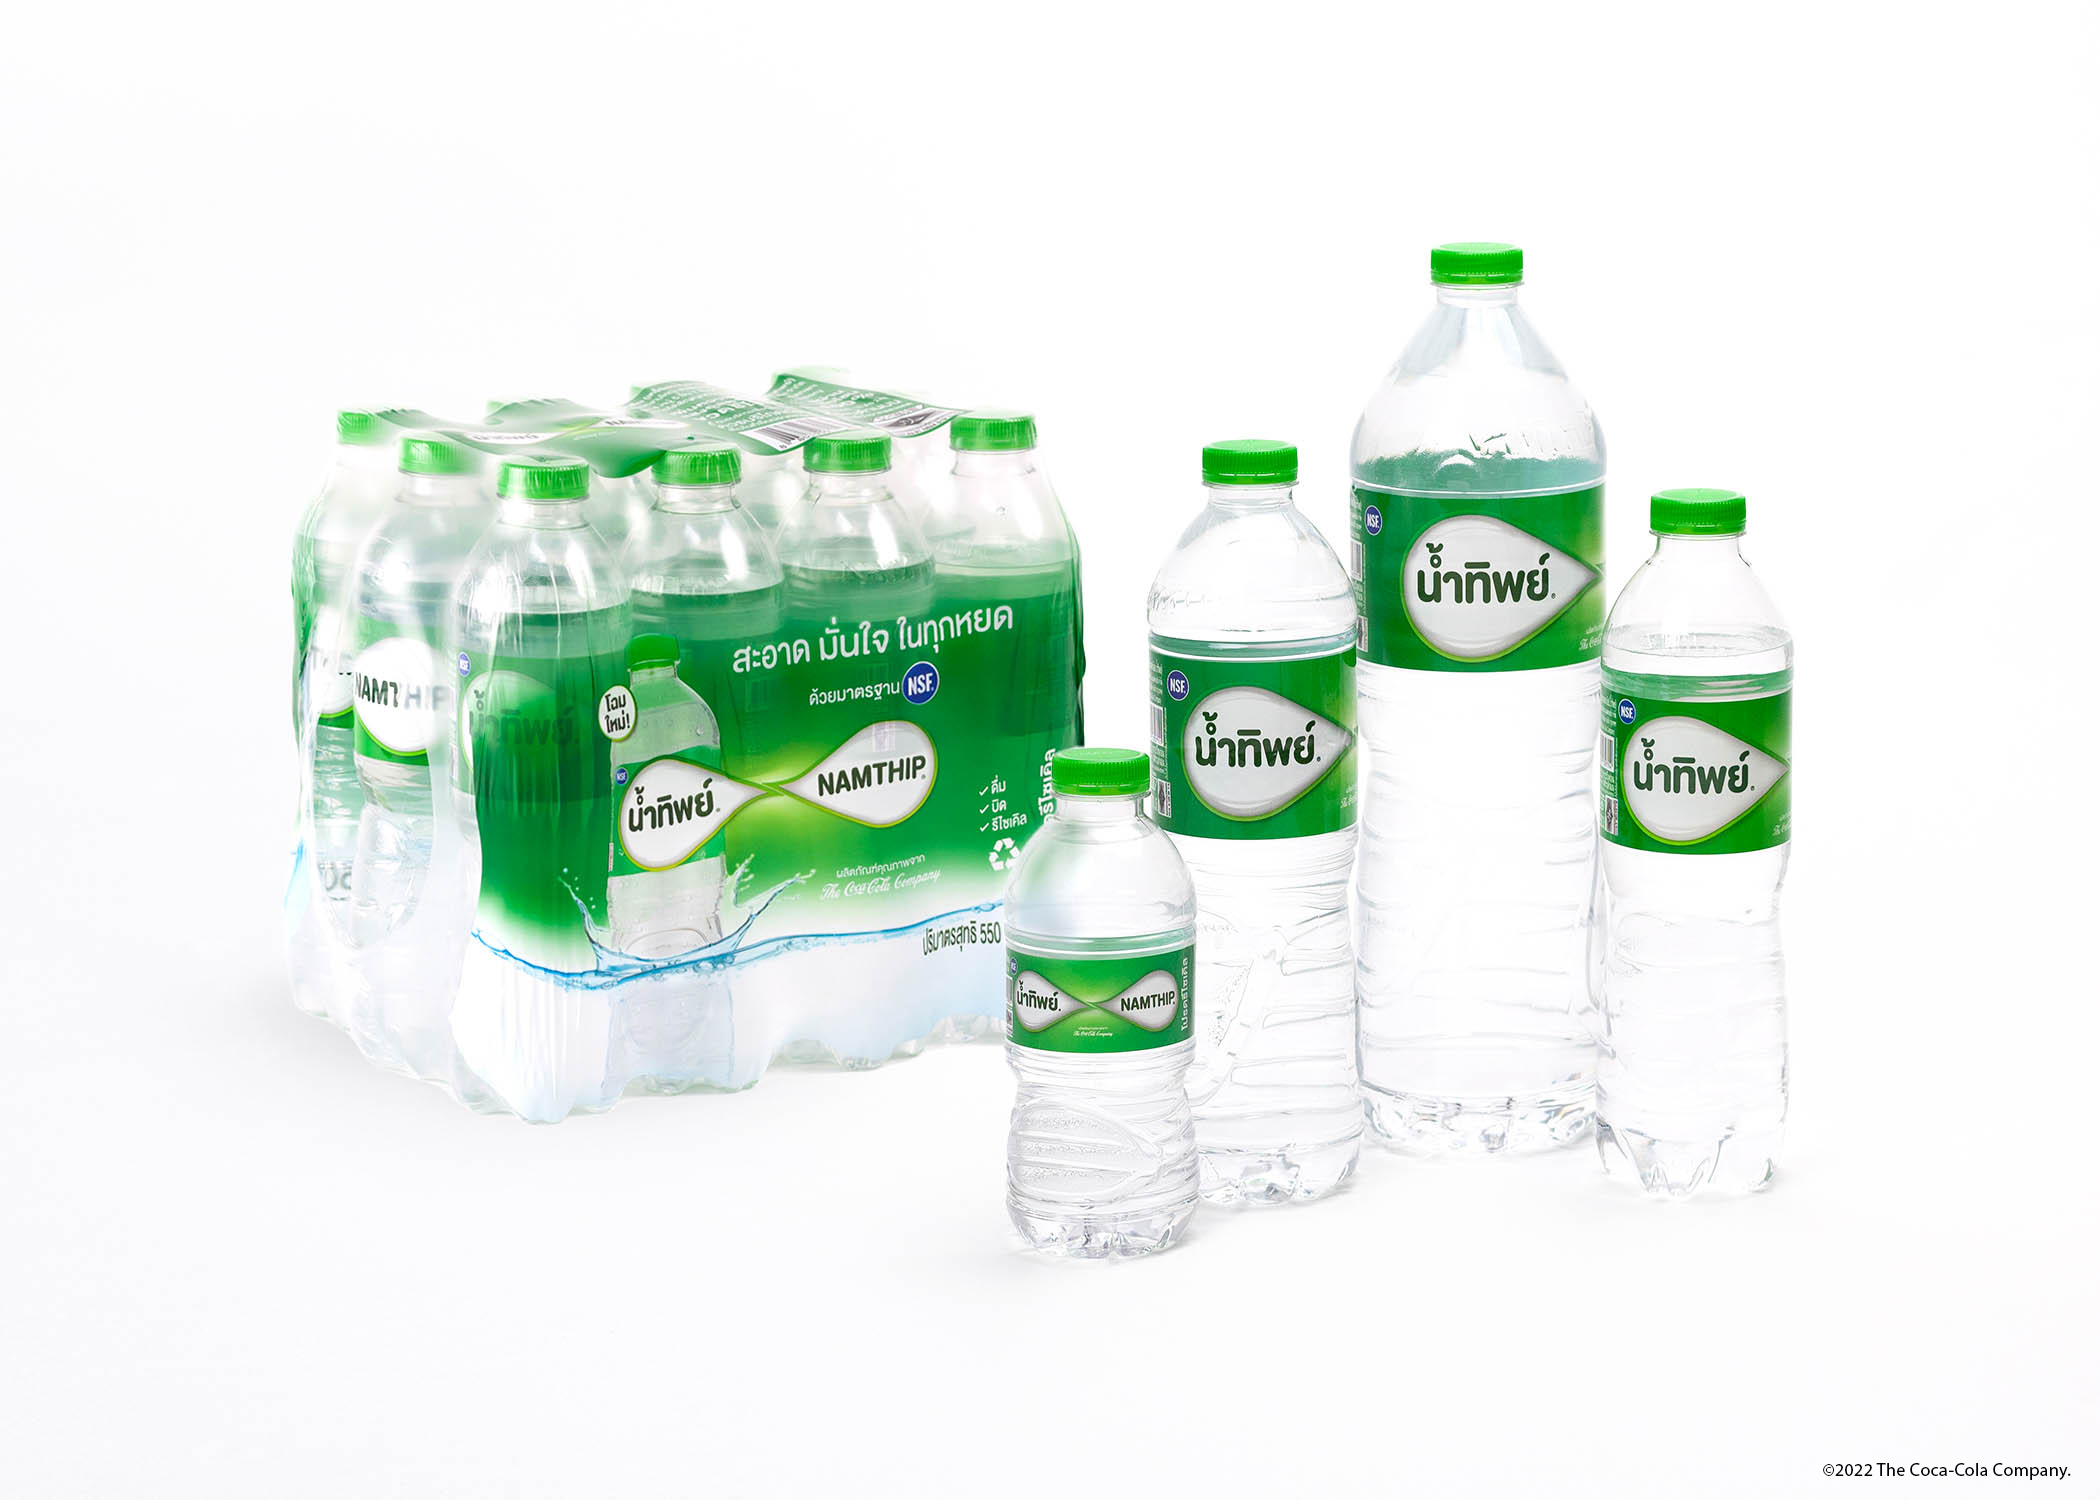 ดื่ม “น้ำทิพย์” ปรับรูปลักษณ์และบรรจุภัณฑ์ใหม่ ชูดีไซน์เด่น “อินฟินิตี้ ริง”